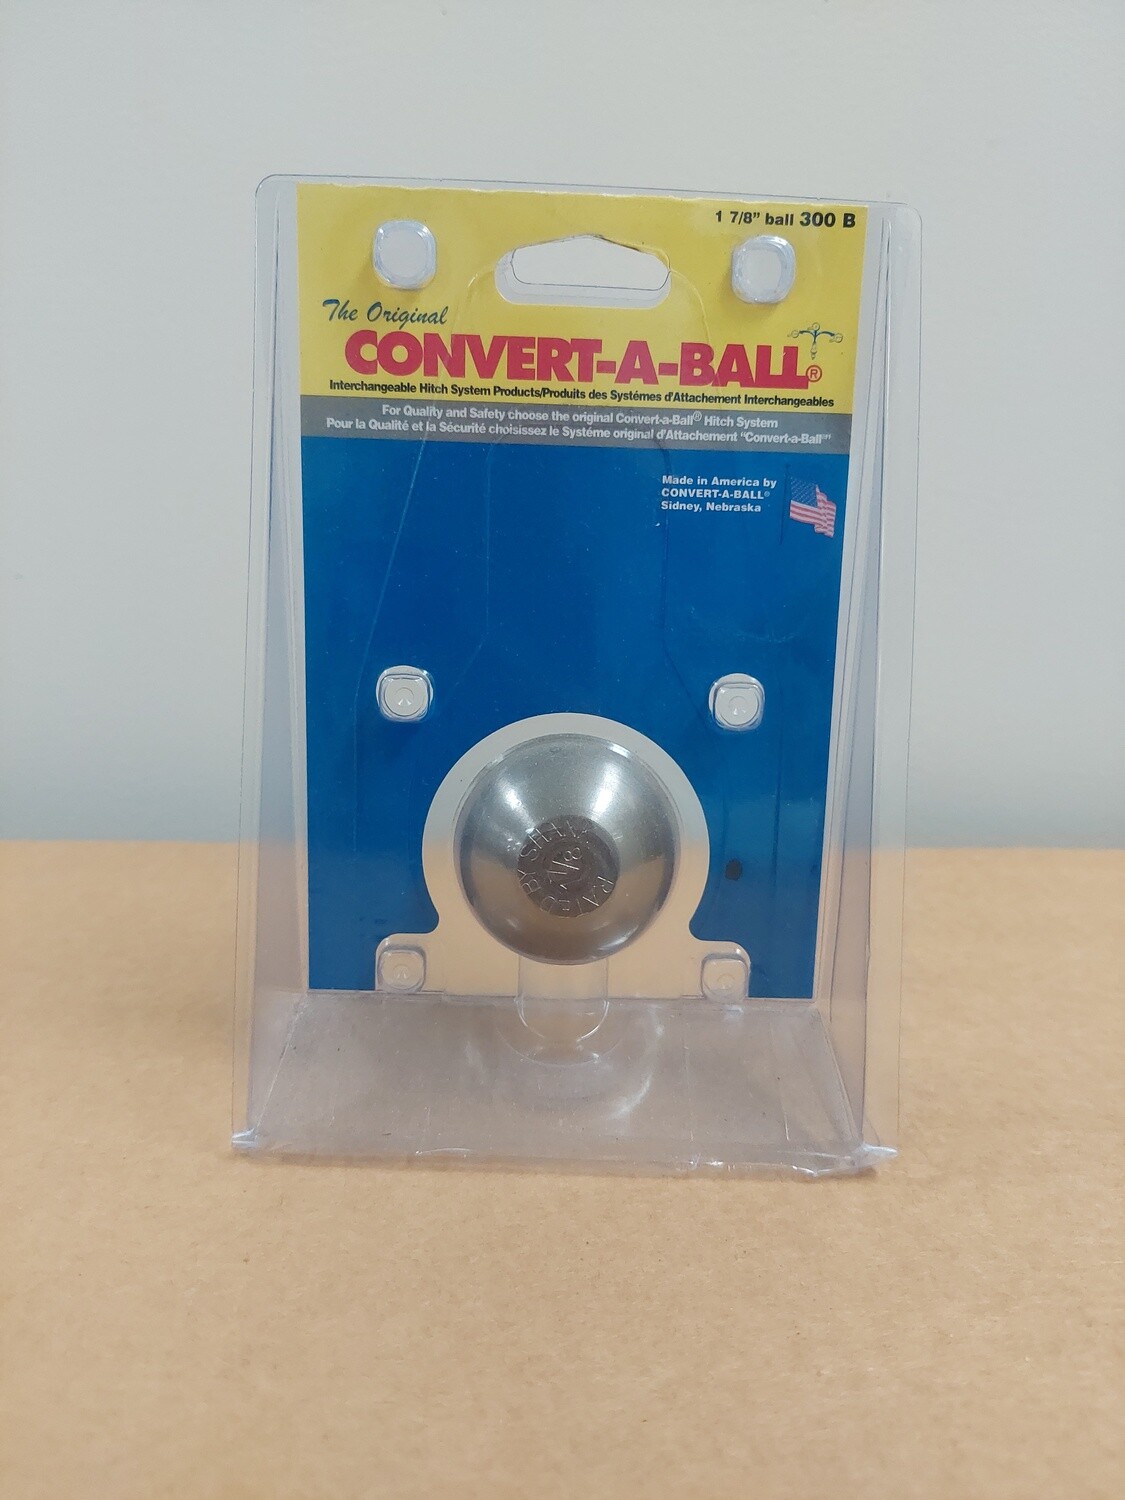 Convert-A-Ball 1 7/8" ball